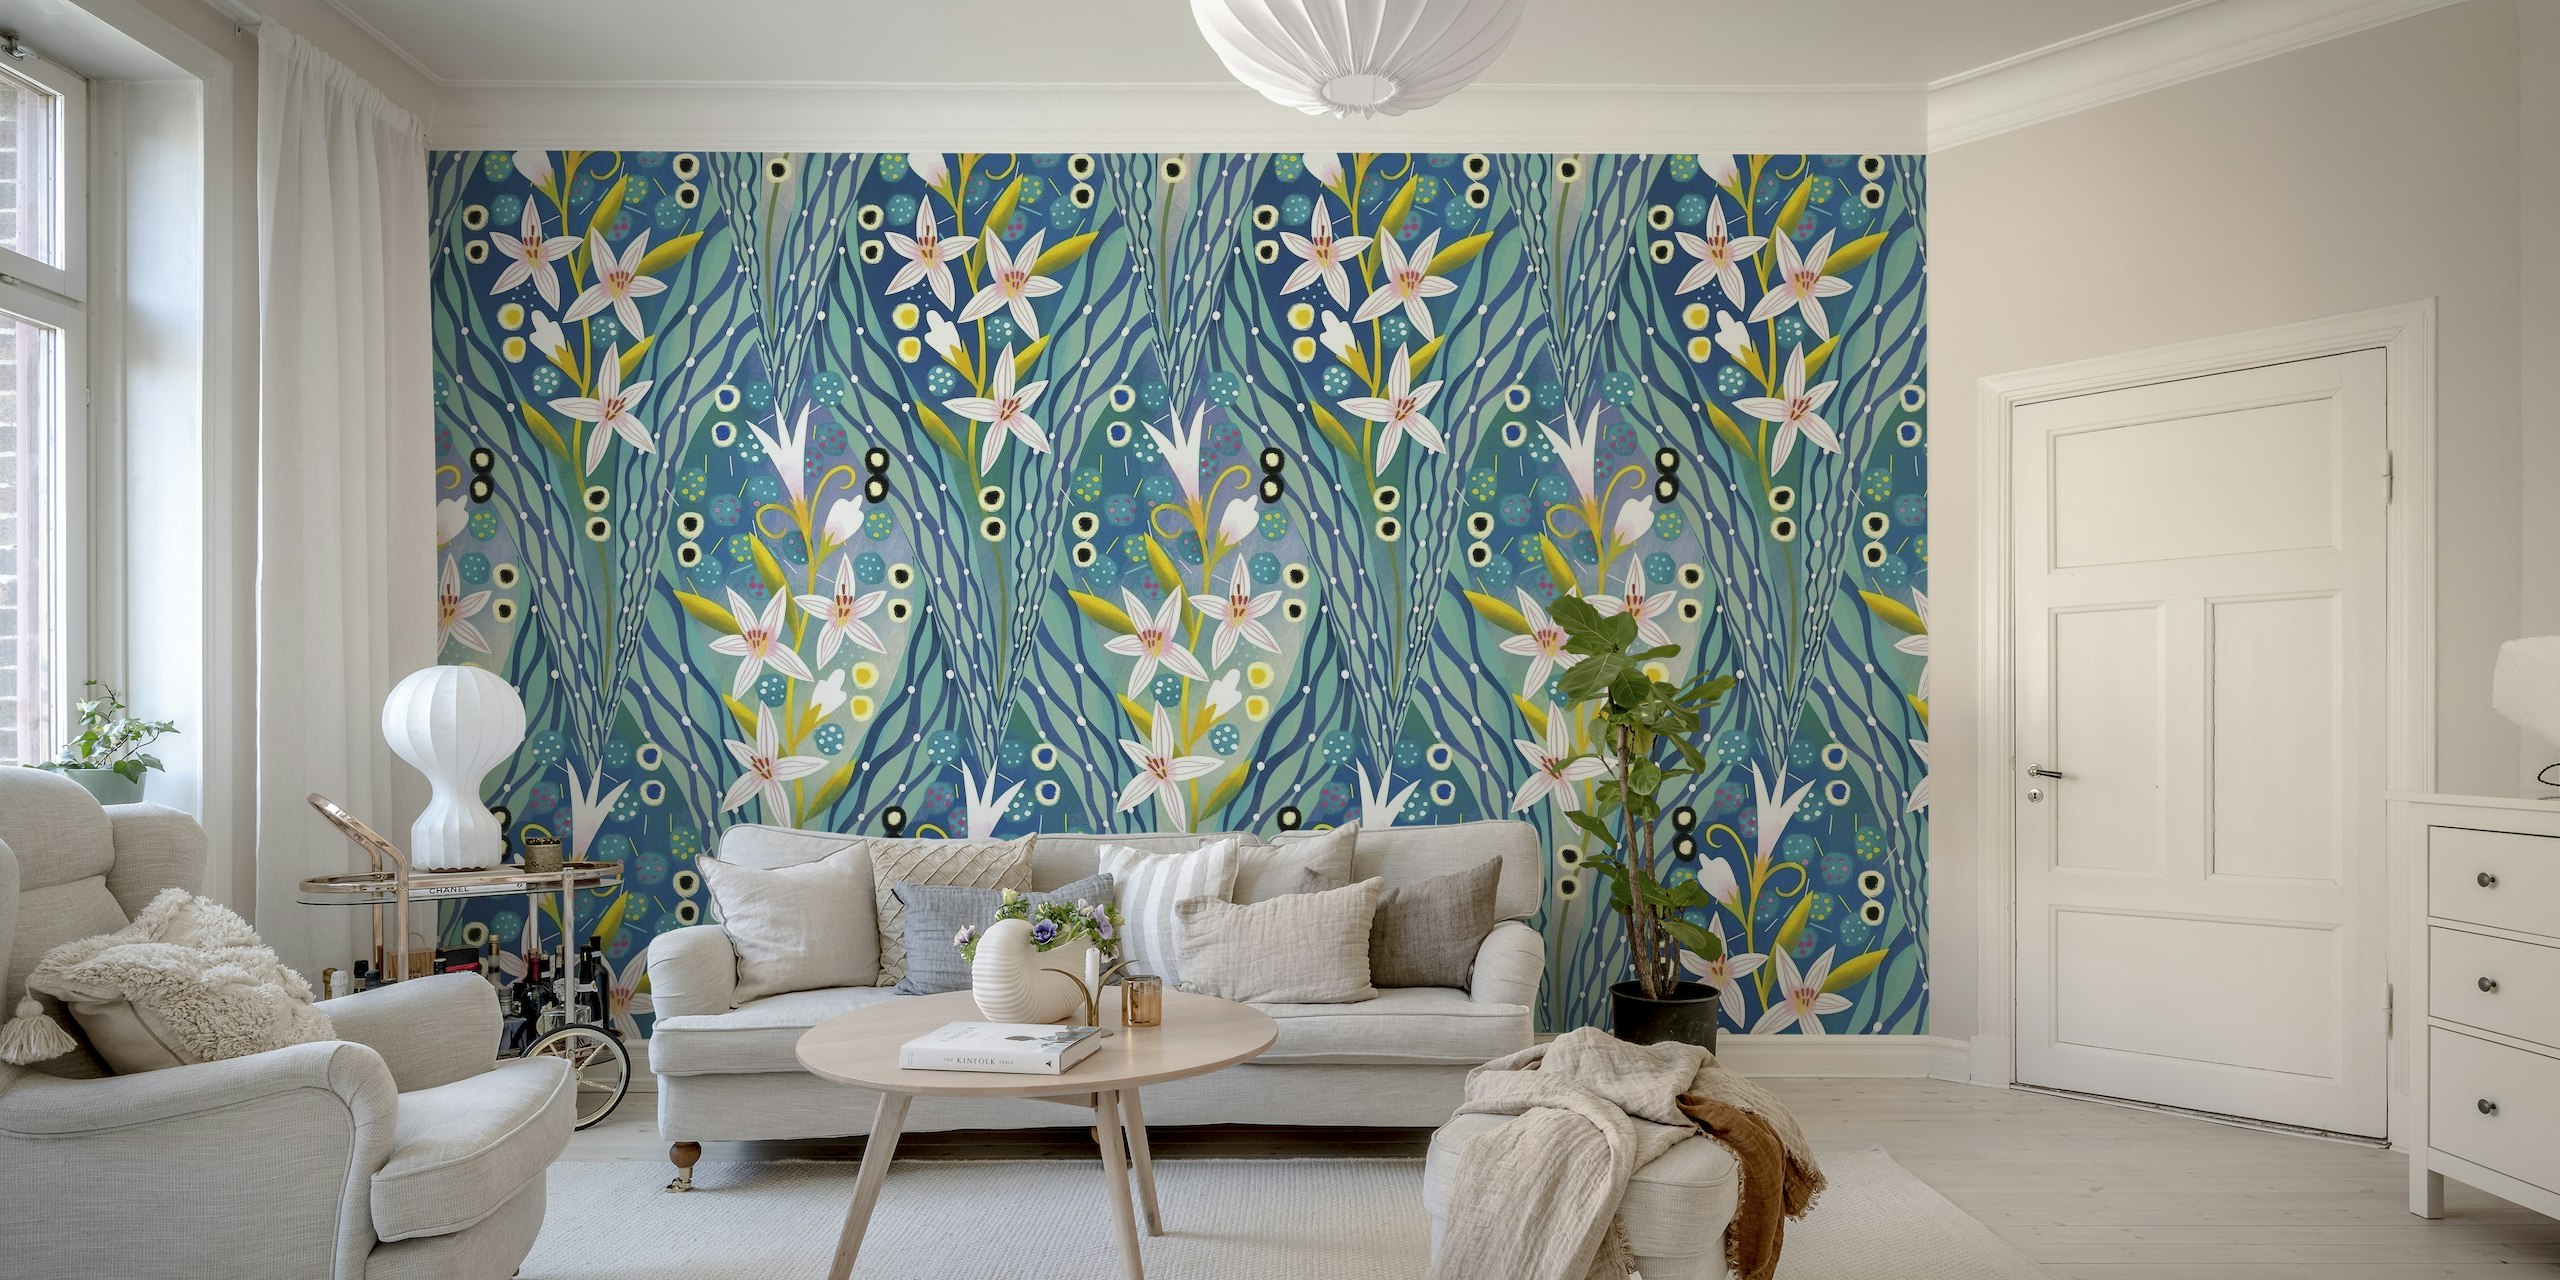 Art deco lilies behang